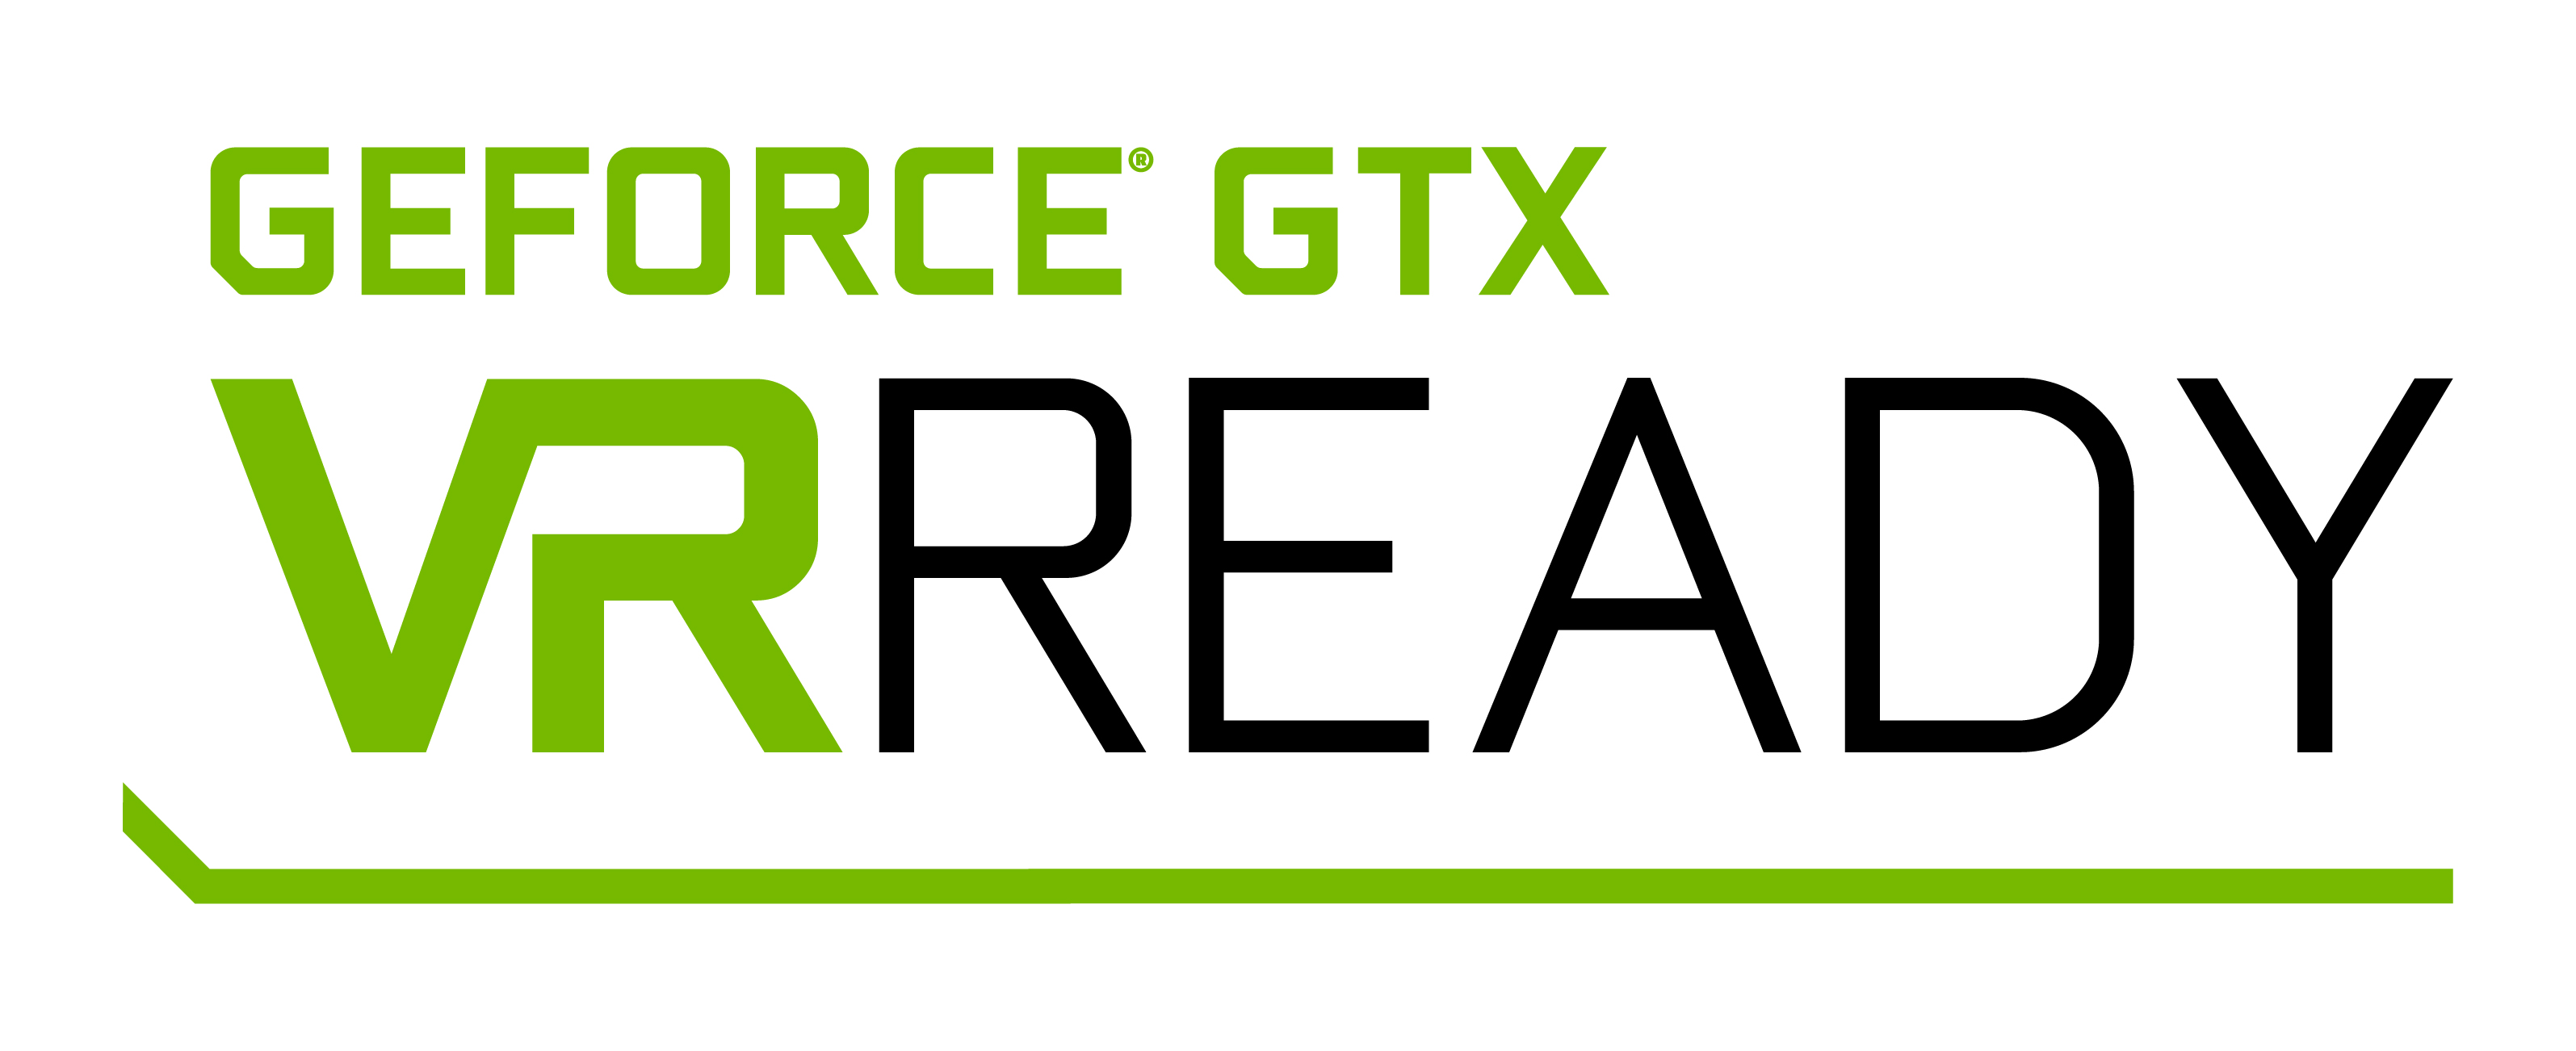 Immagine pubblicata in relazione al seguente contenuto: GeForce GTX VR Ready  il gaming con la realt virtuale secondo NVIDIA | Nome immagine: news23600_NVIDIA-GeForce-GTX-VR-Ready_1.jpg